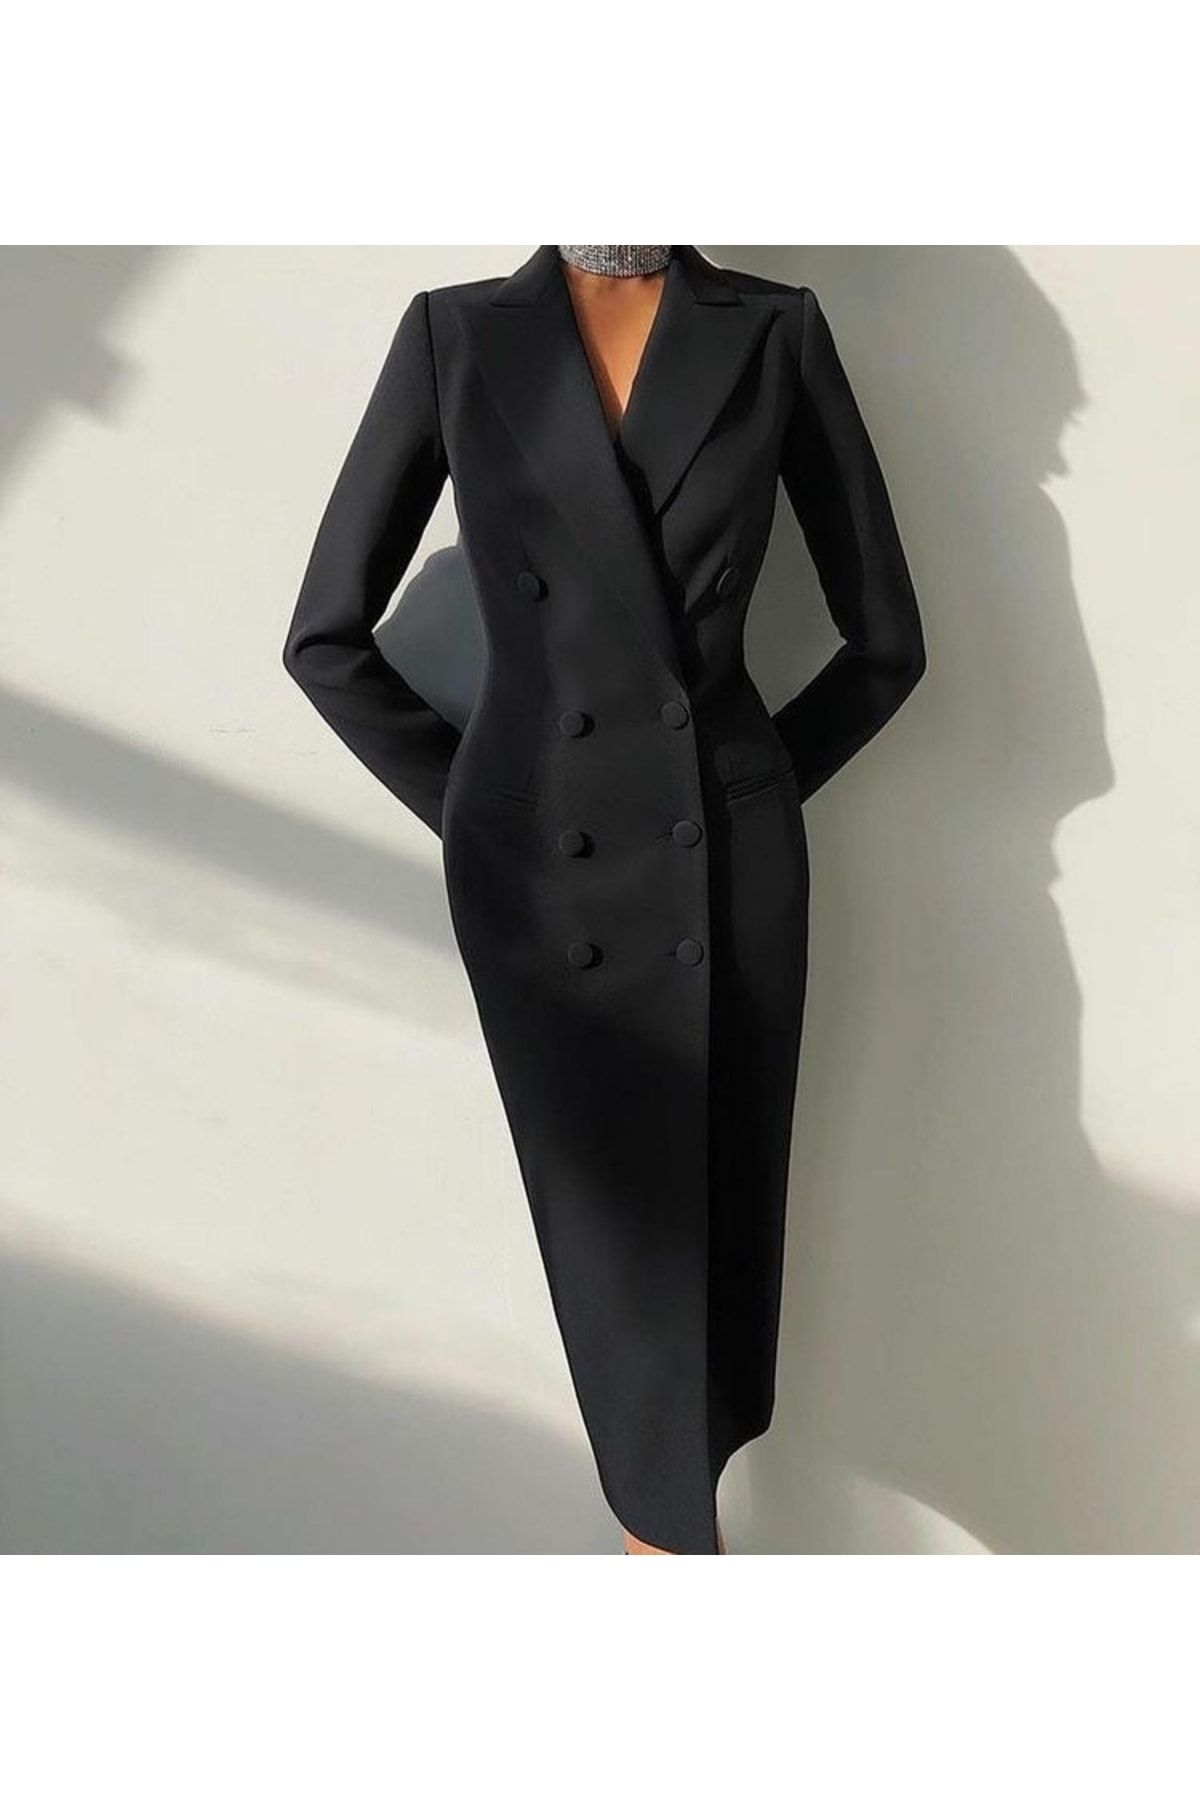 Raheel Fashion Kadın Modern Siyah Ceket Elbise